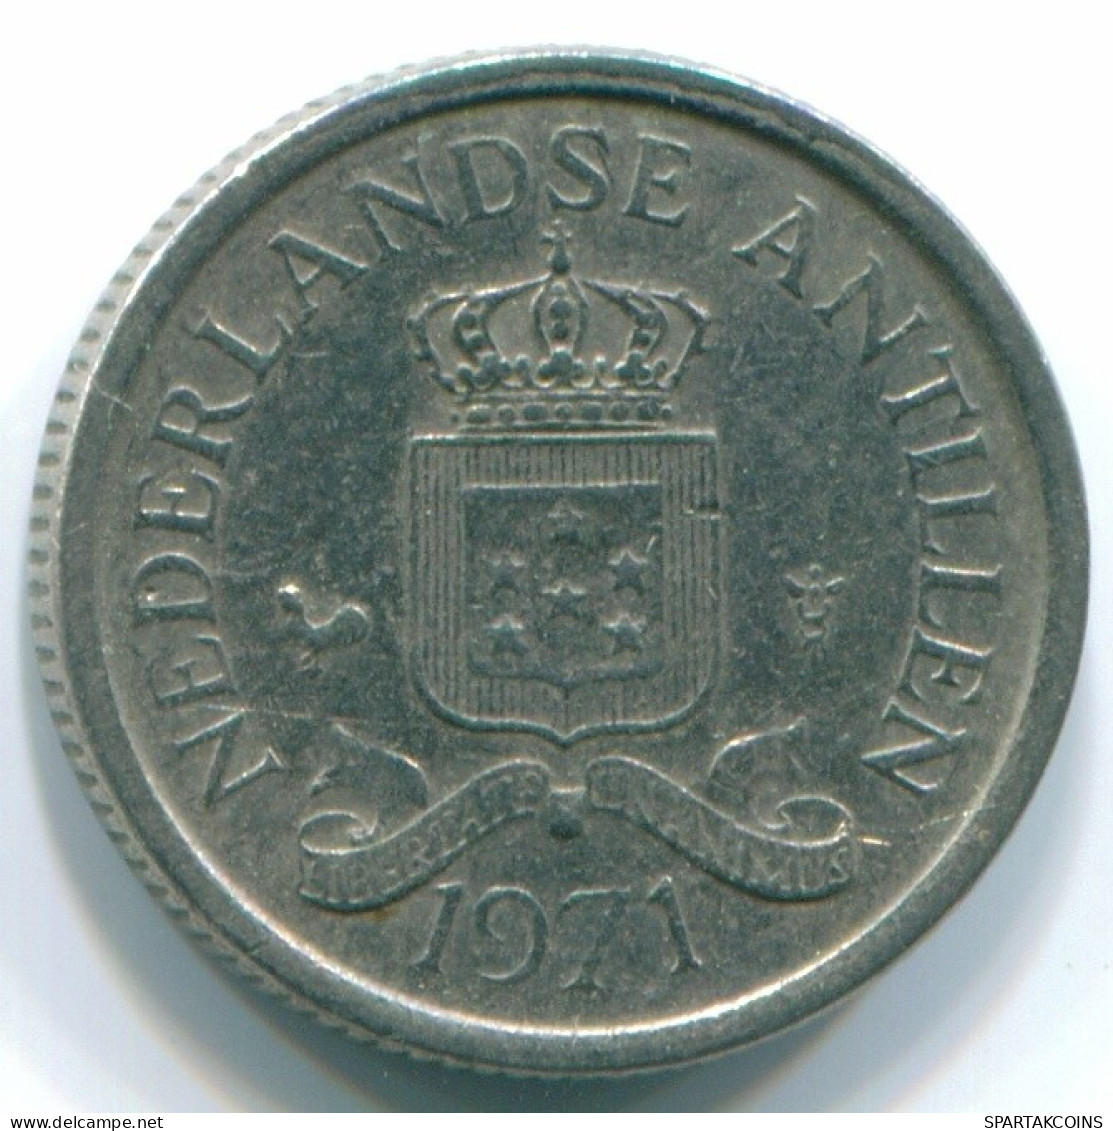 10 CENTS 1971 NIEDERLÄNDISCHE ANTILLEN Nickel Koloniale Münze #S13445.D.A - Antilles Néerlandaises